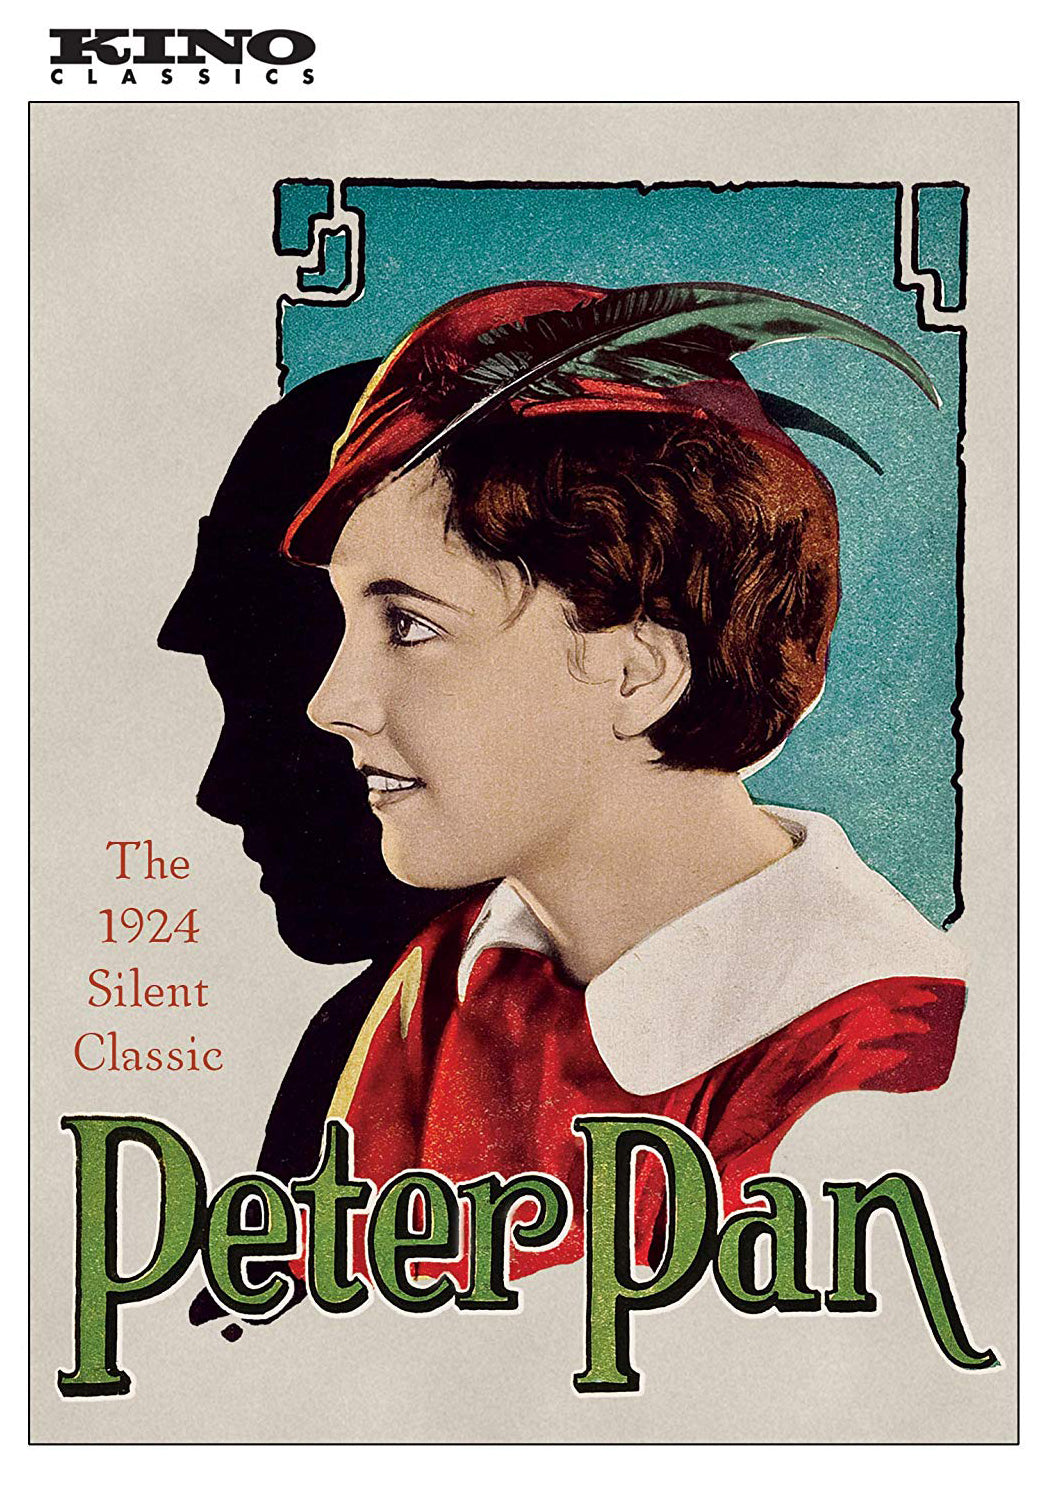 Peter Pan cover art